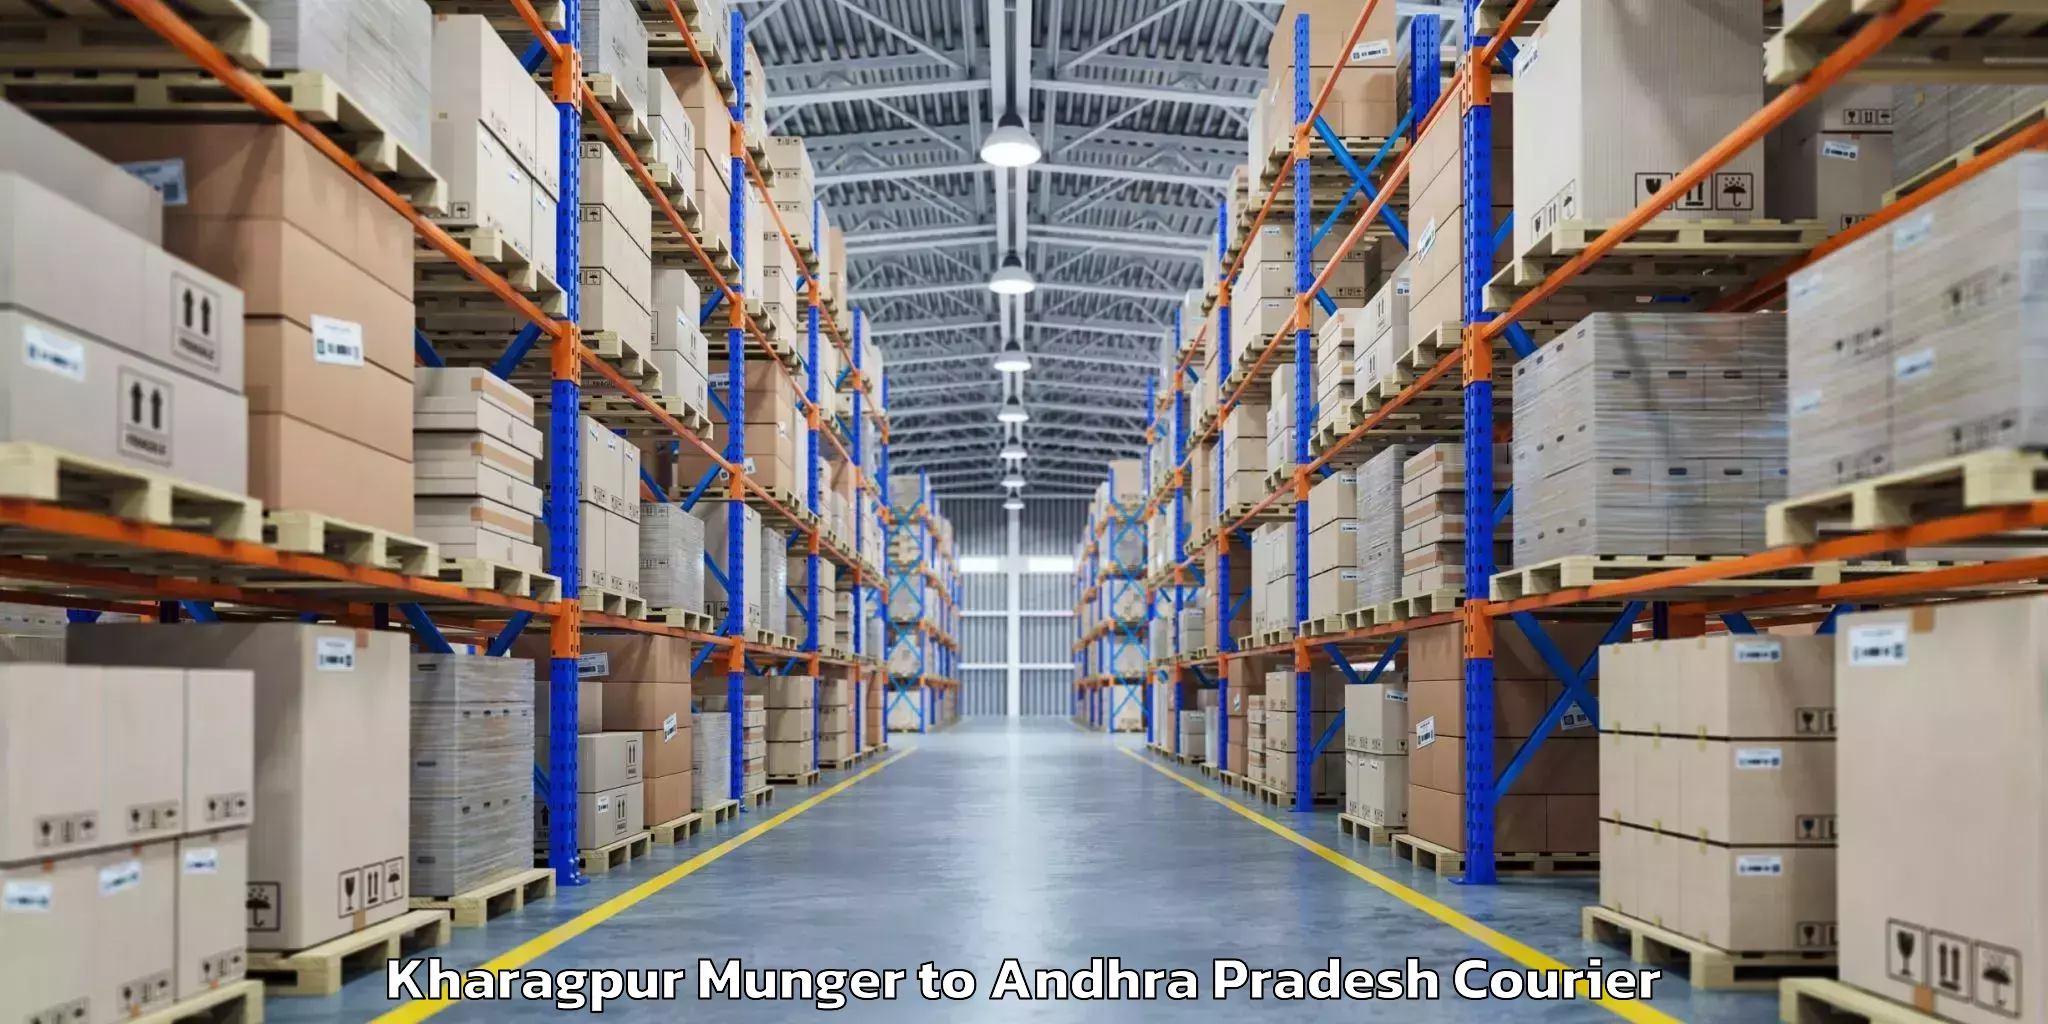 Luggage shipment strategy Kharagpur Munger to Bhimavaram